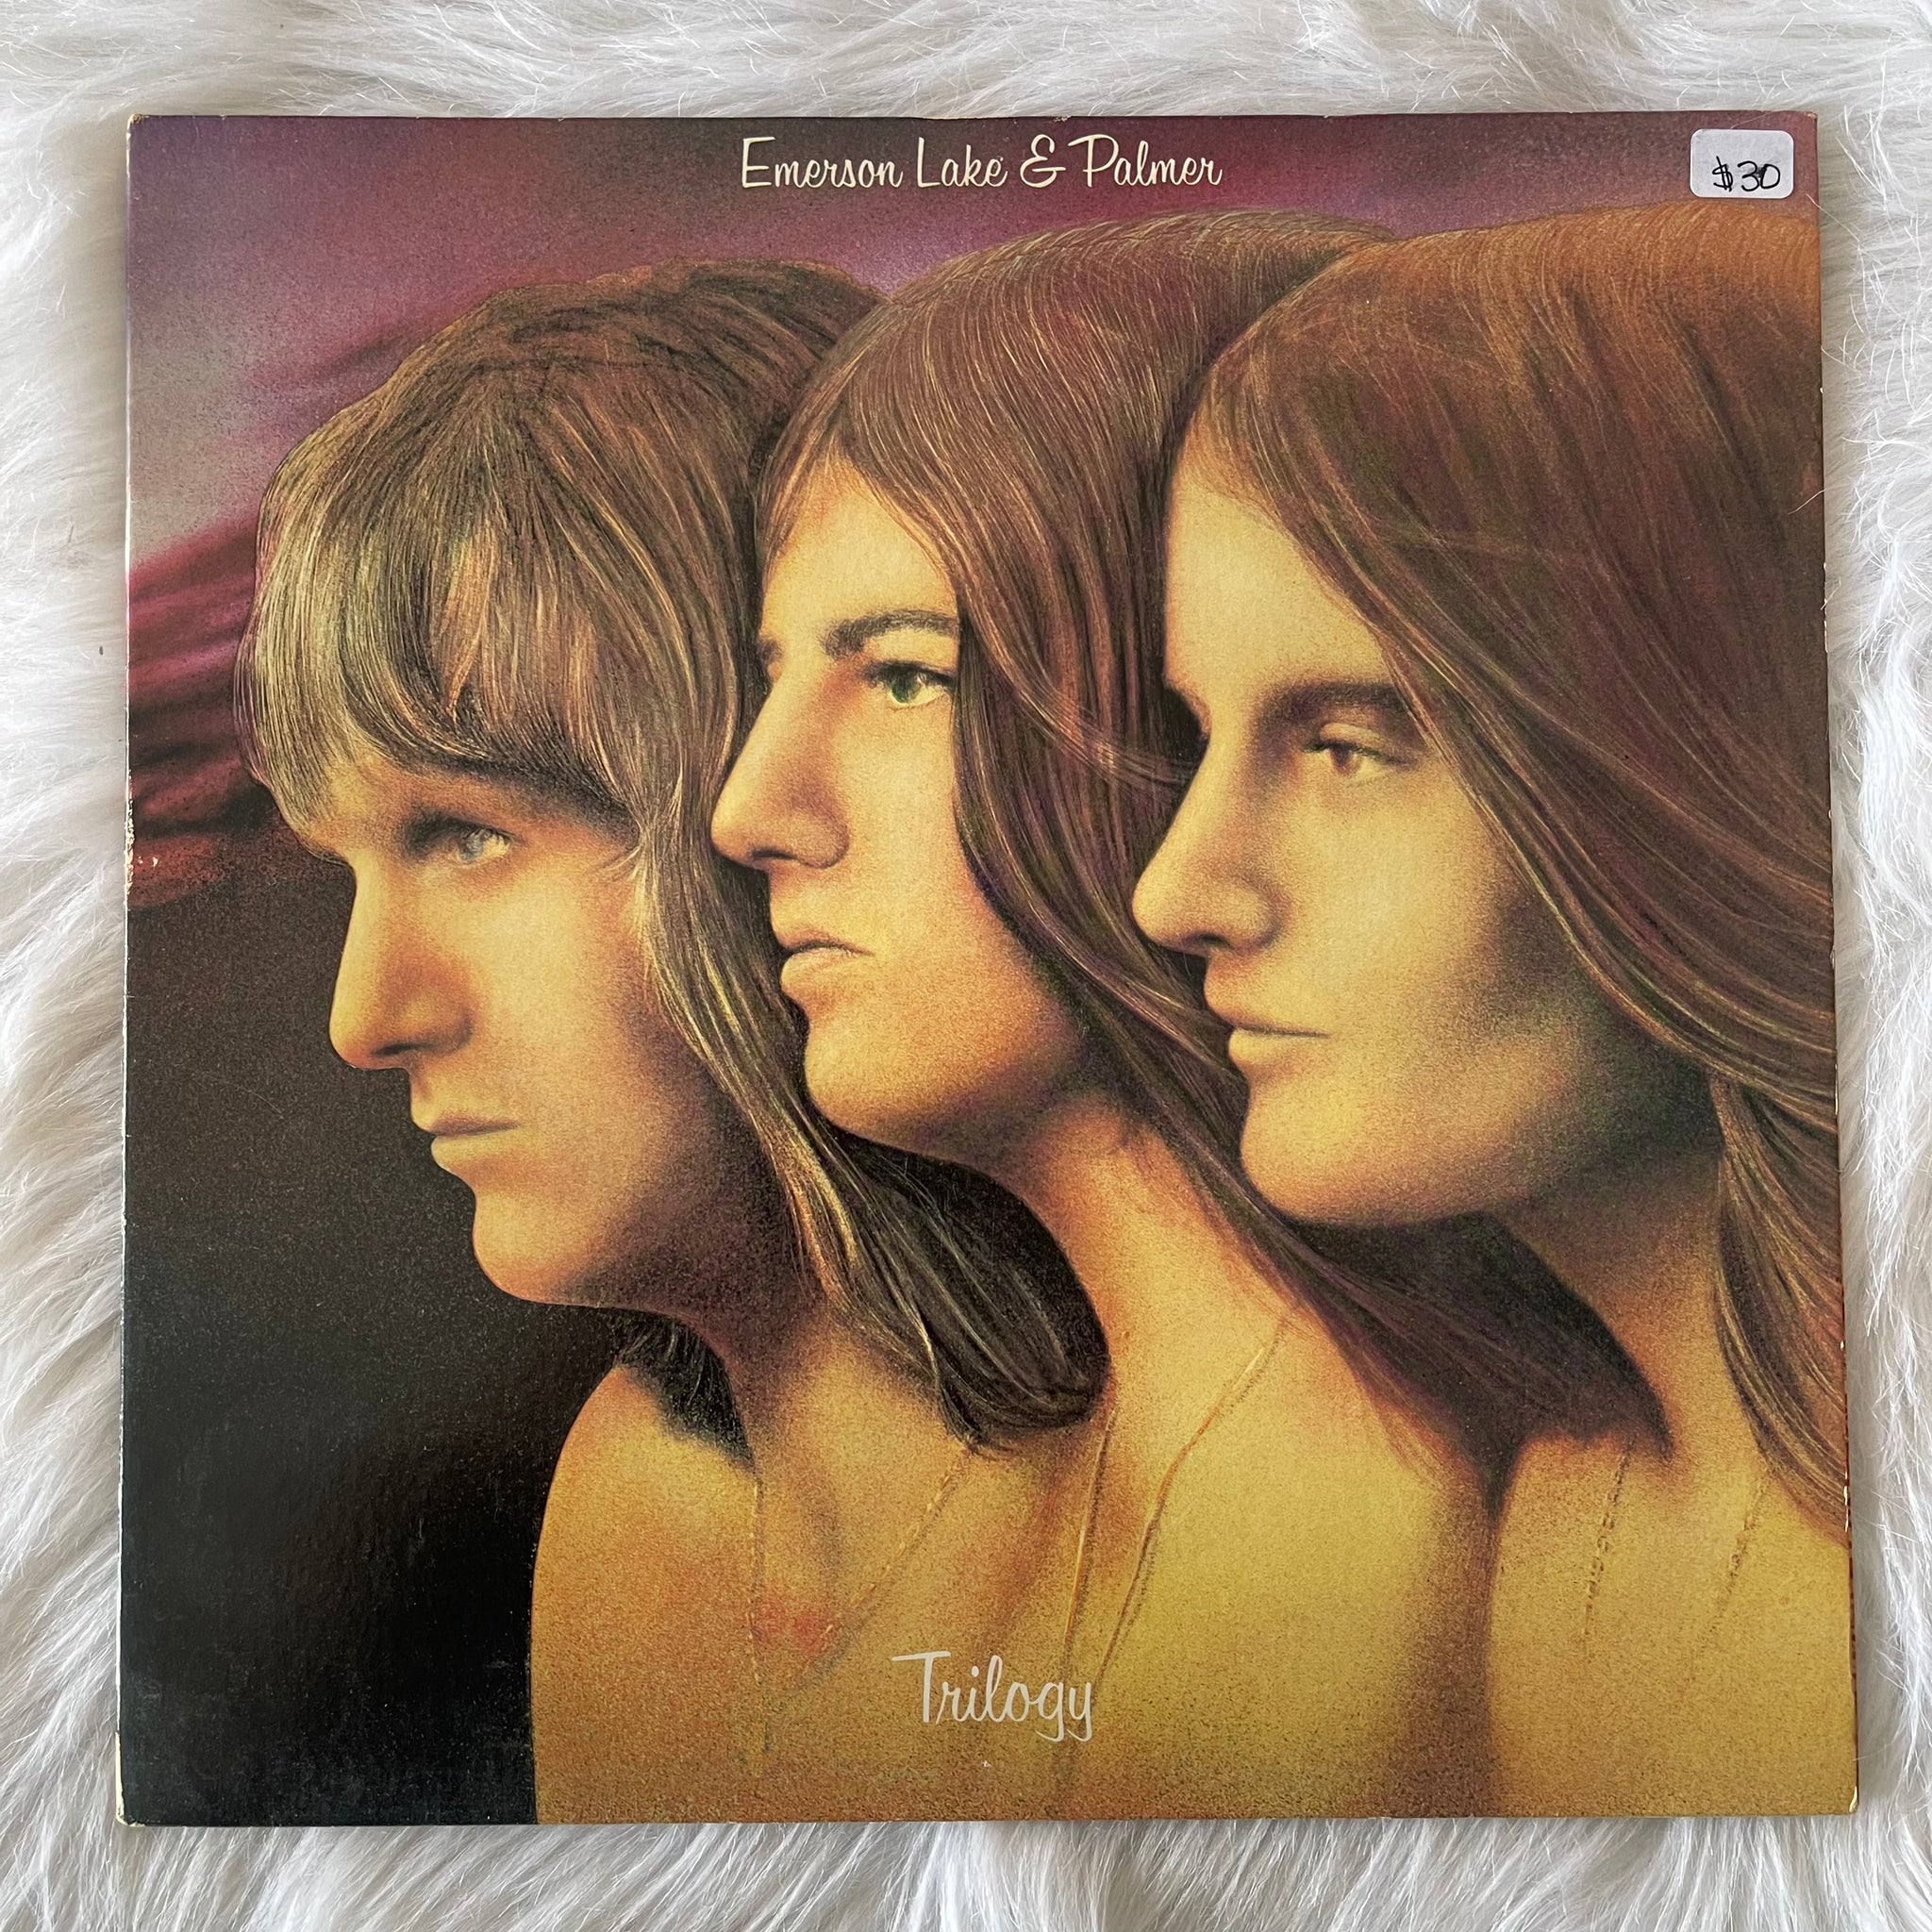 Emerson, Lake & Palmer-Trilogy